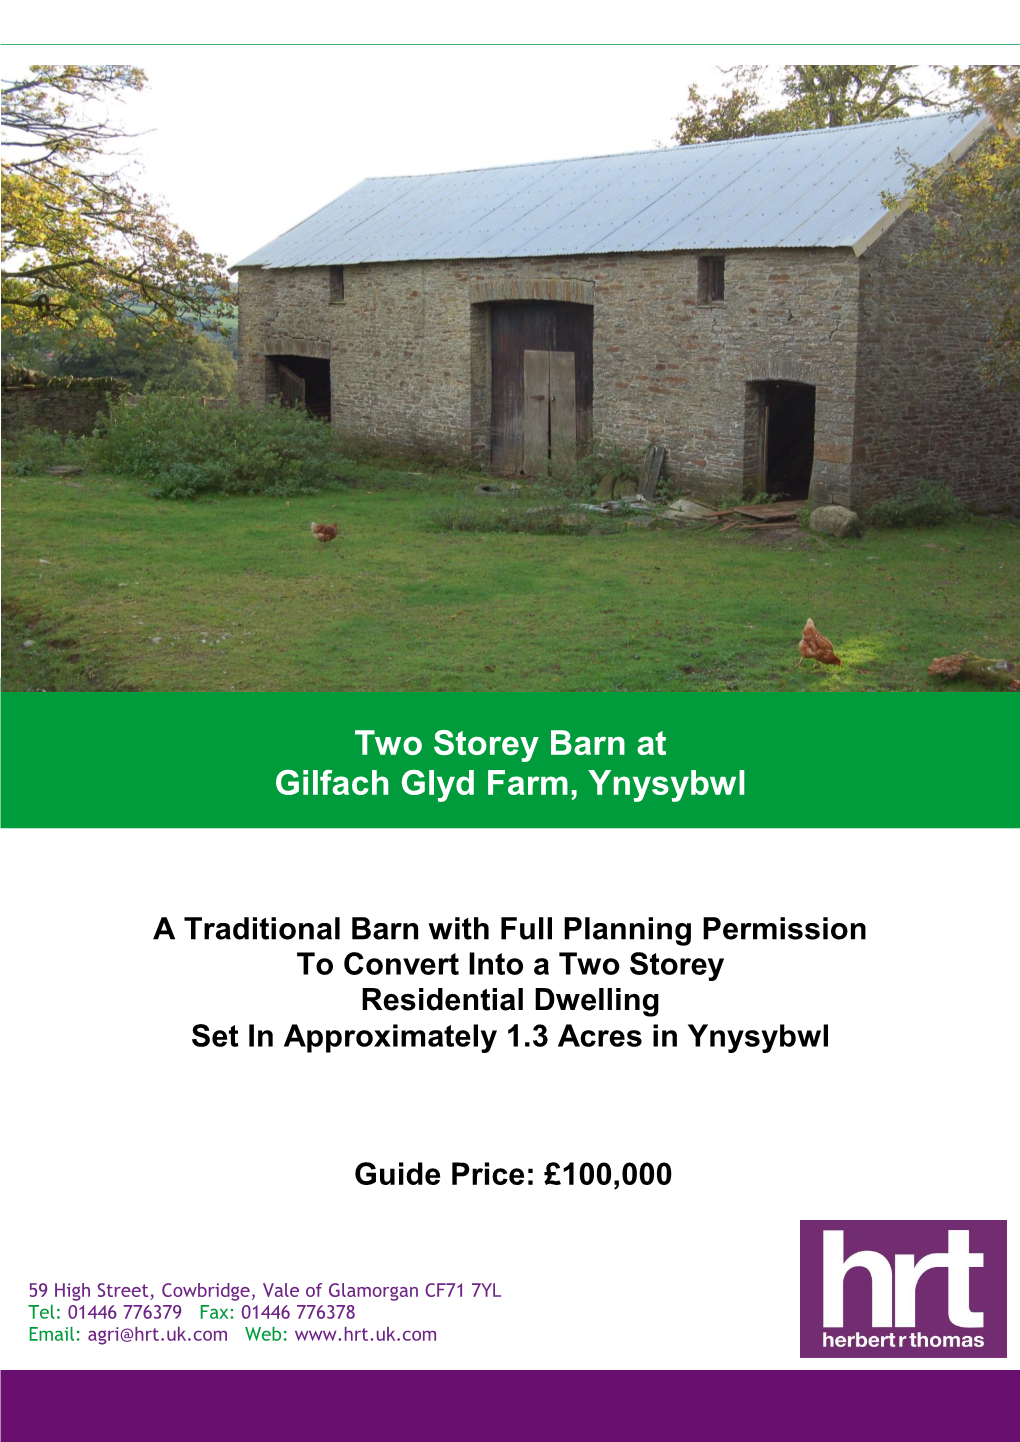 Two Storey Barn at Gilfach Glyd Farm, Ynysybwl